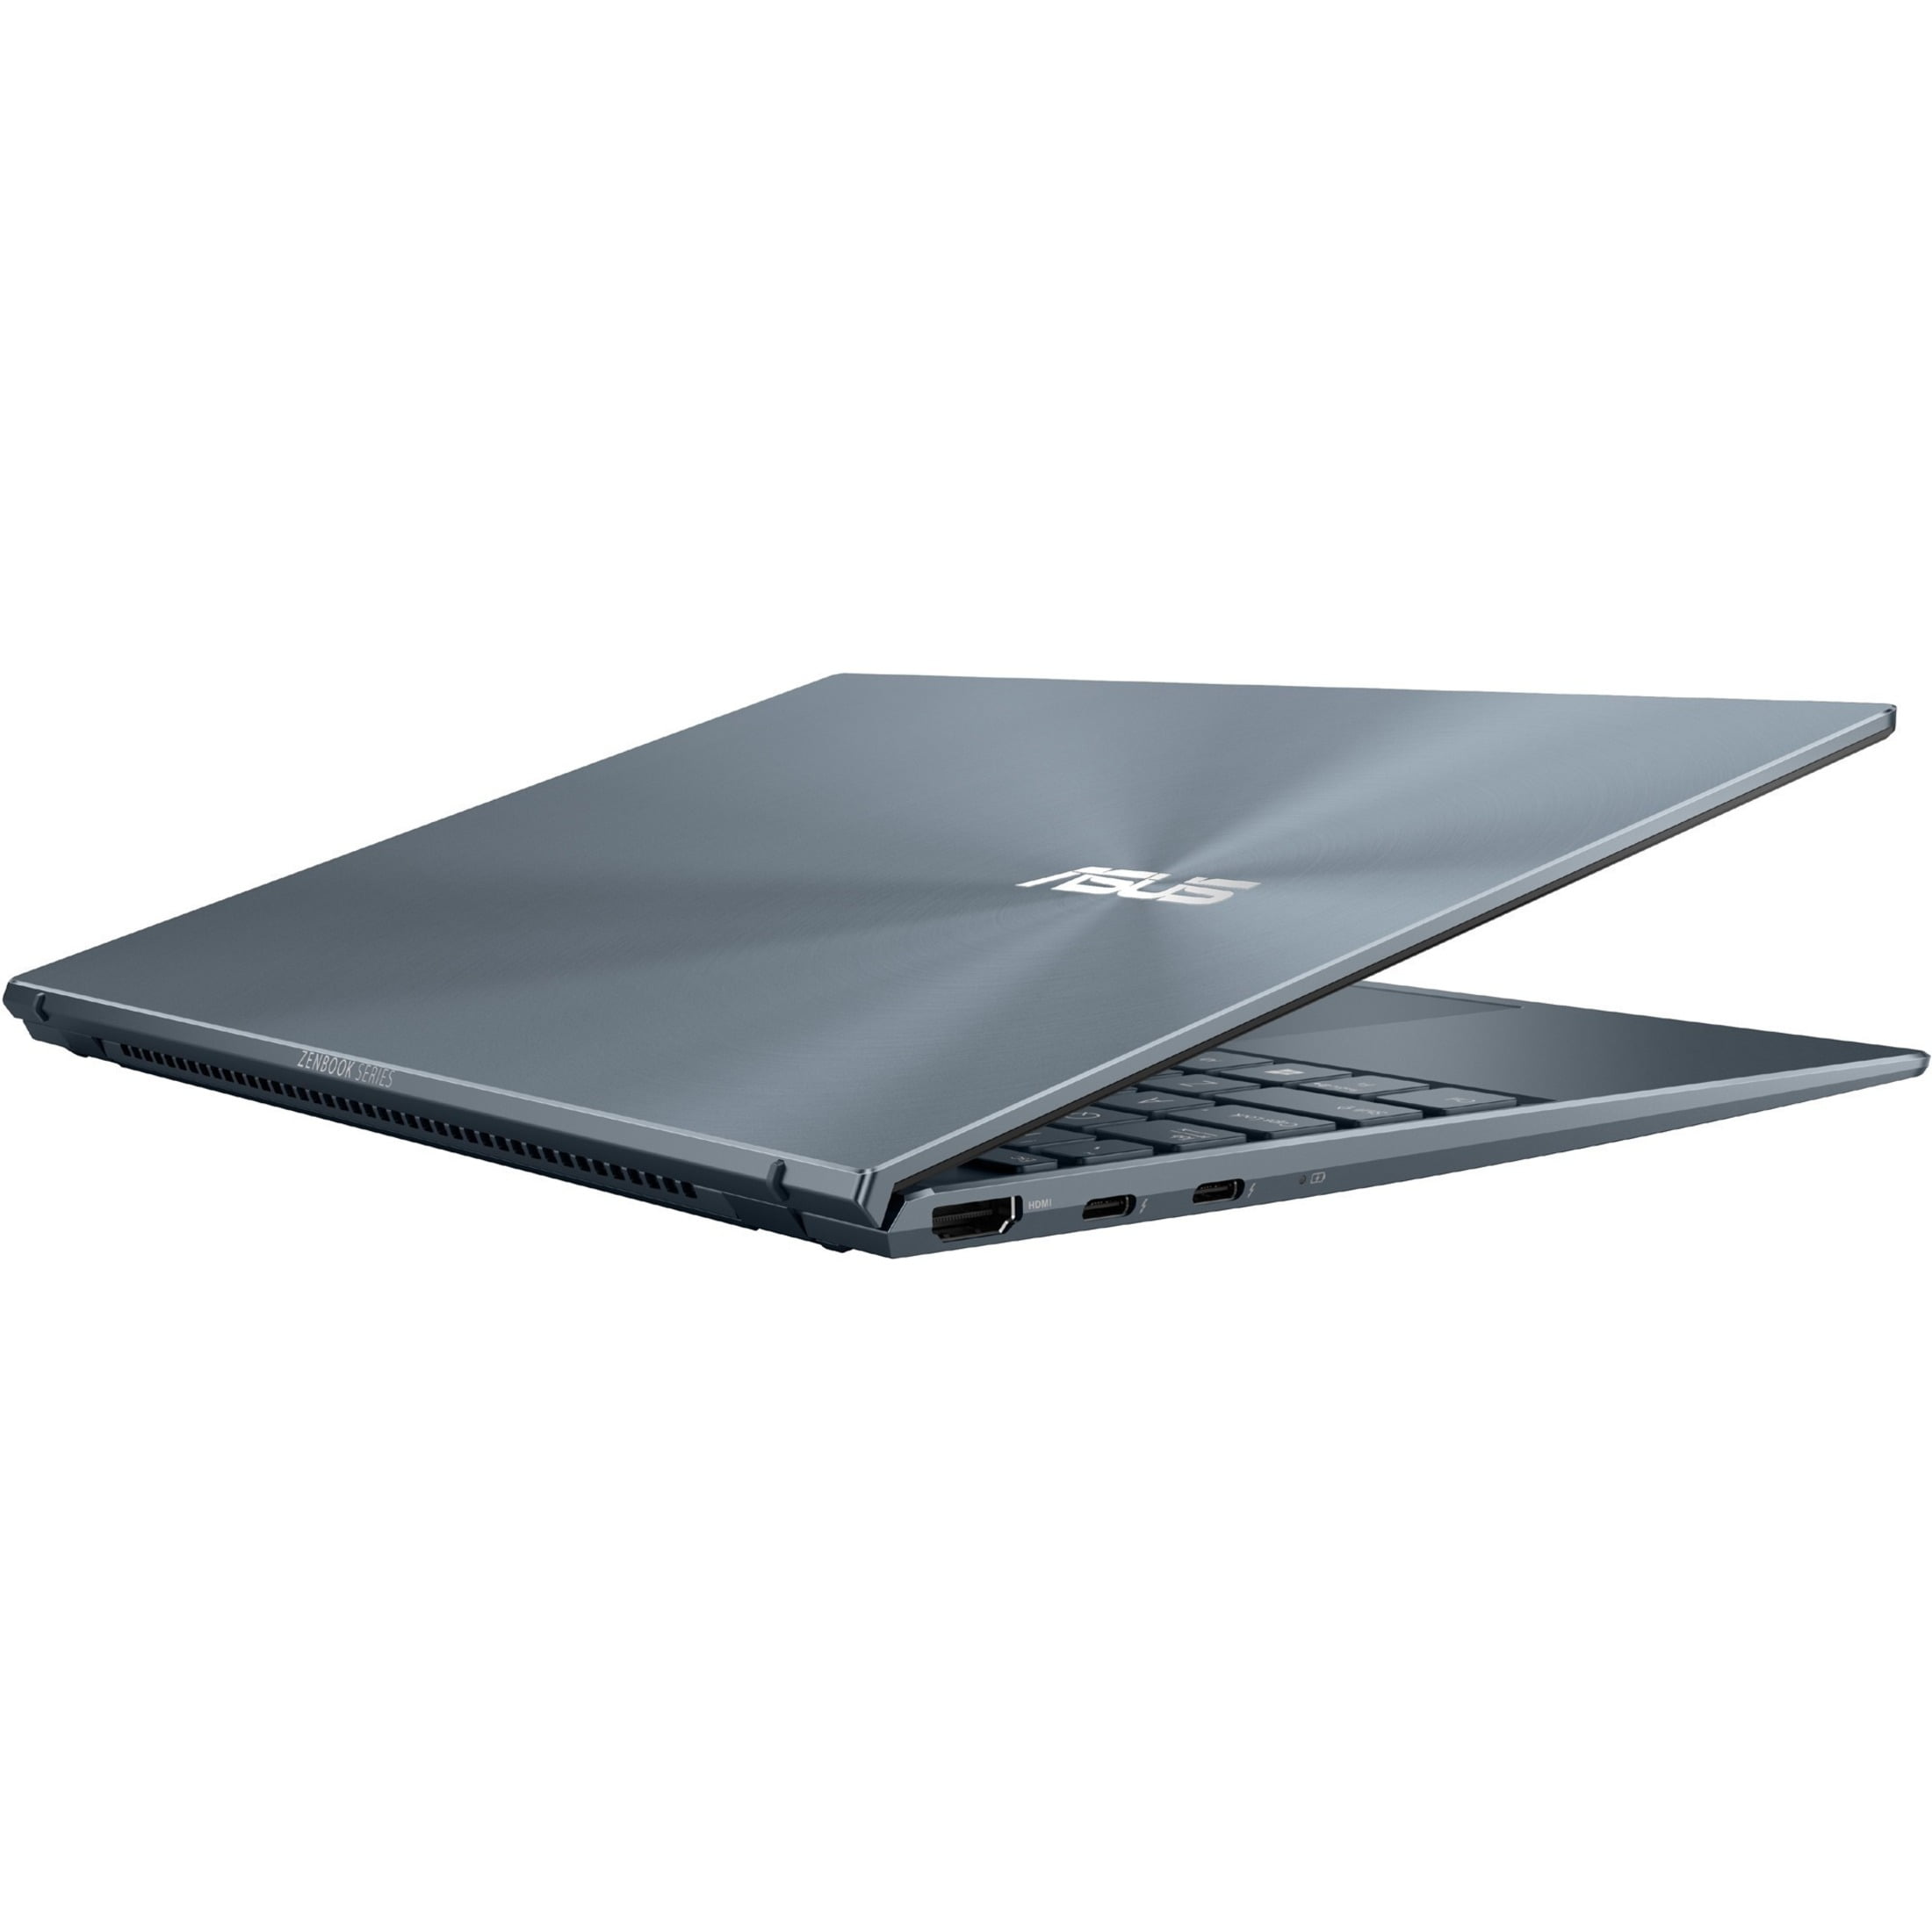 Asus ZenBook 13 13.3